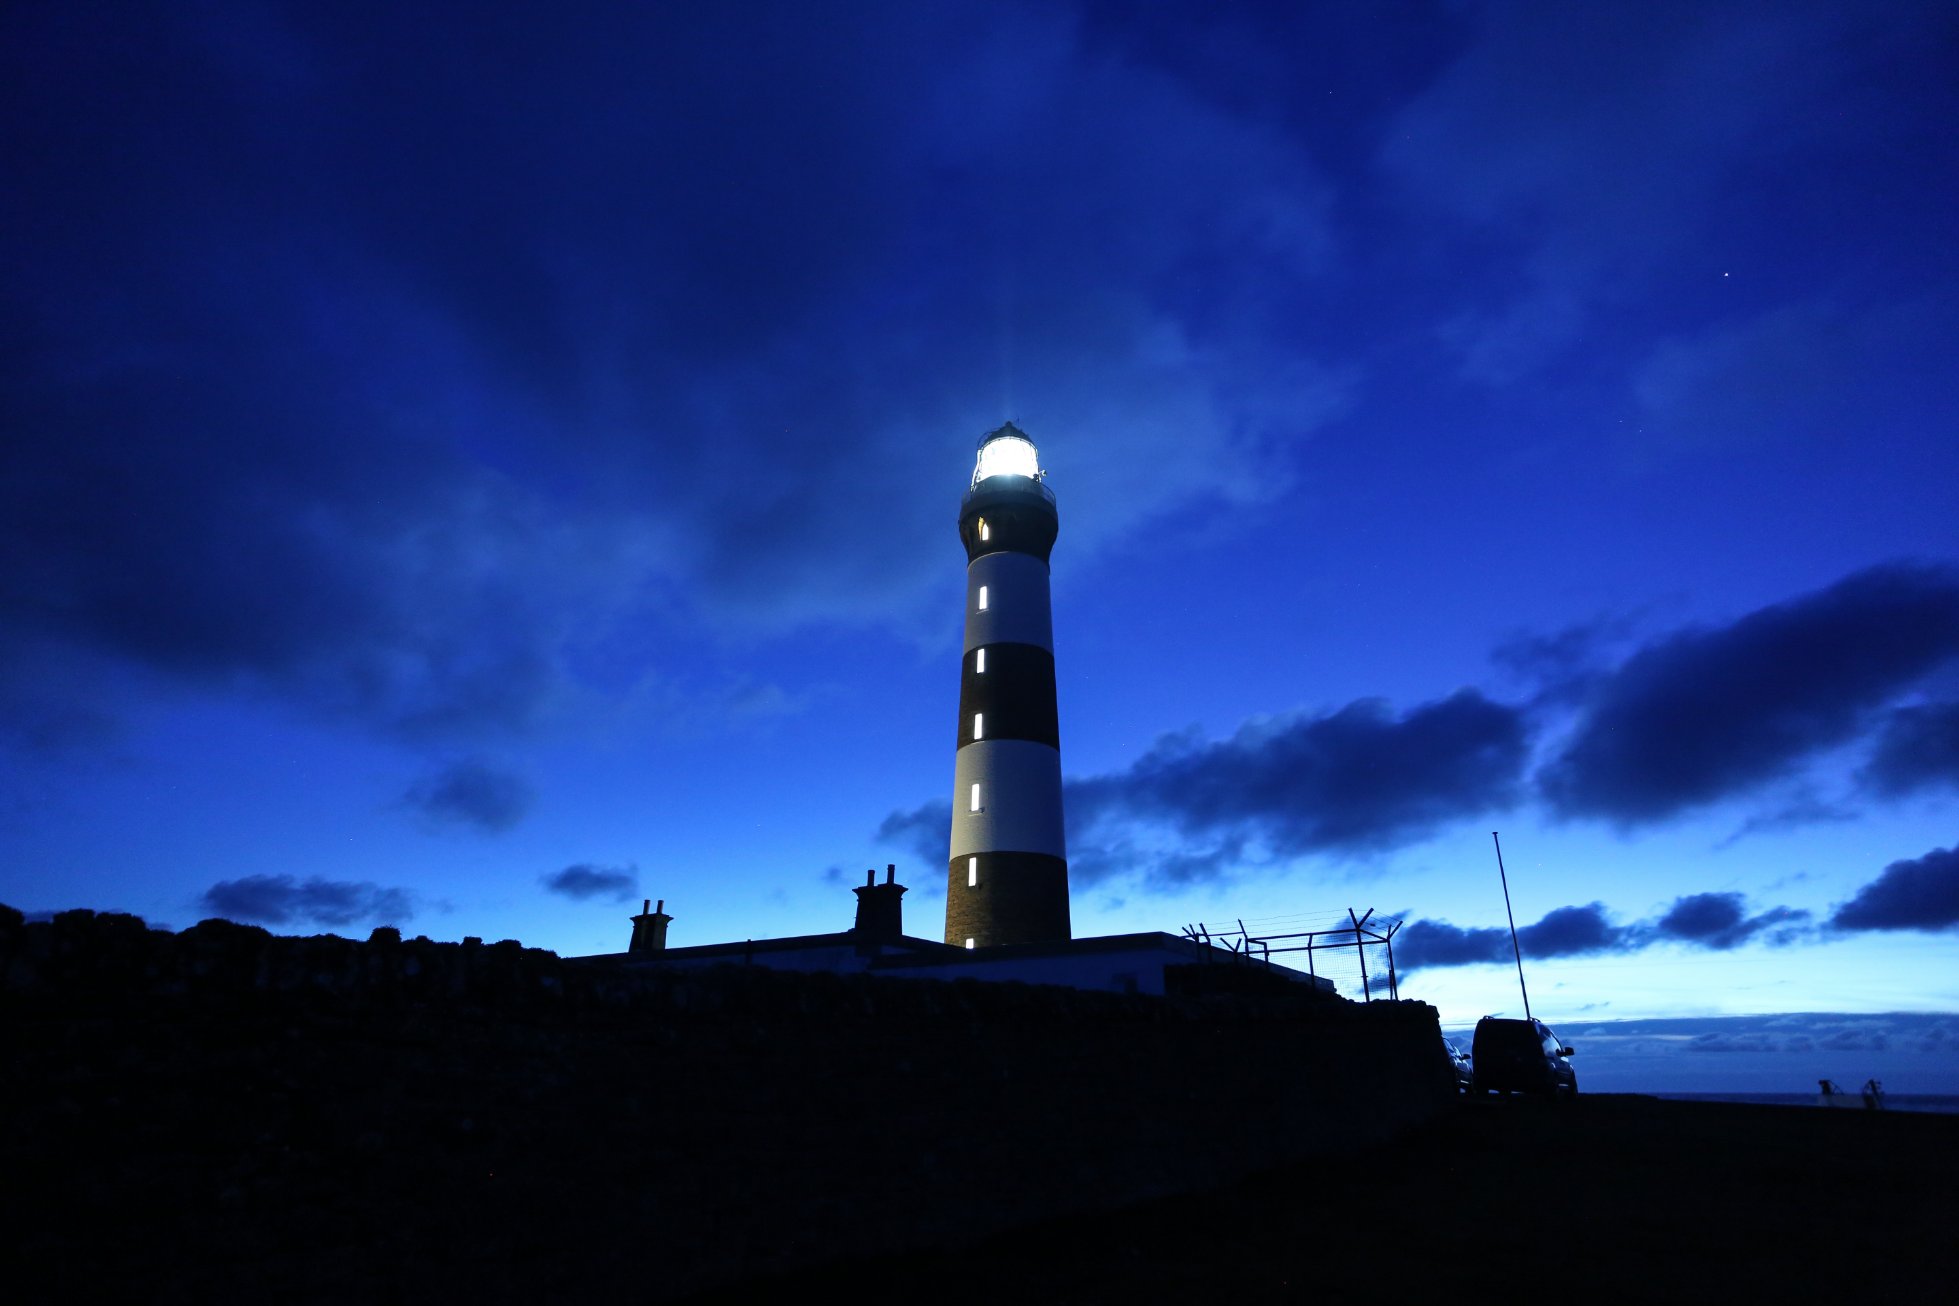 North Ronaldsay Lighthouse, Orkney